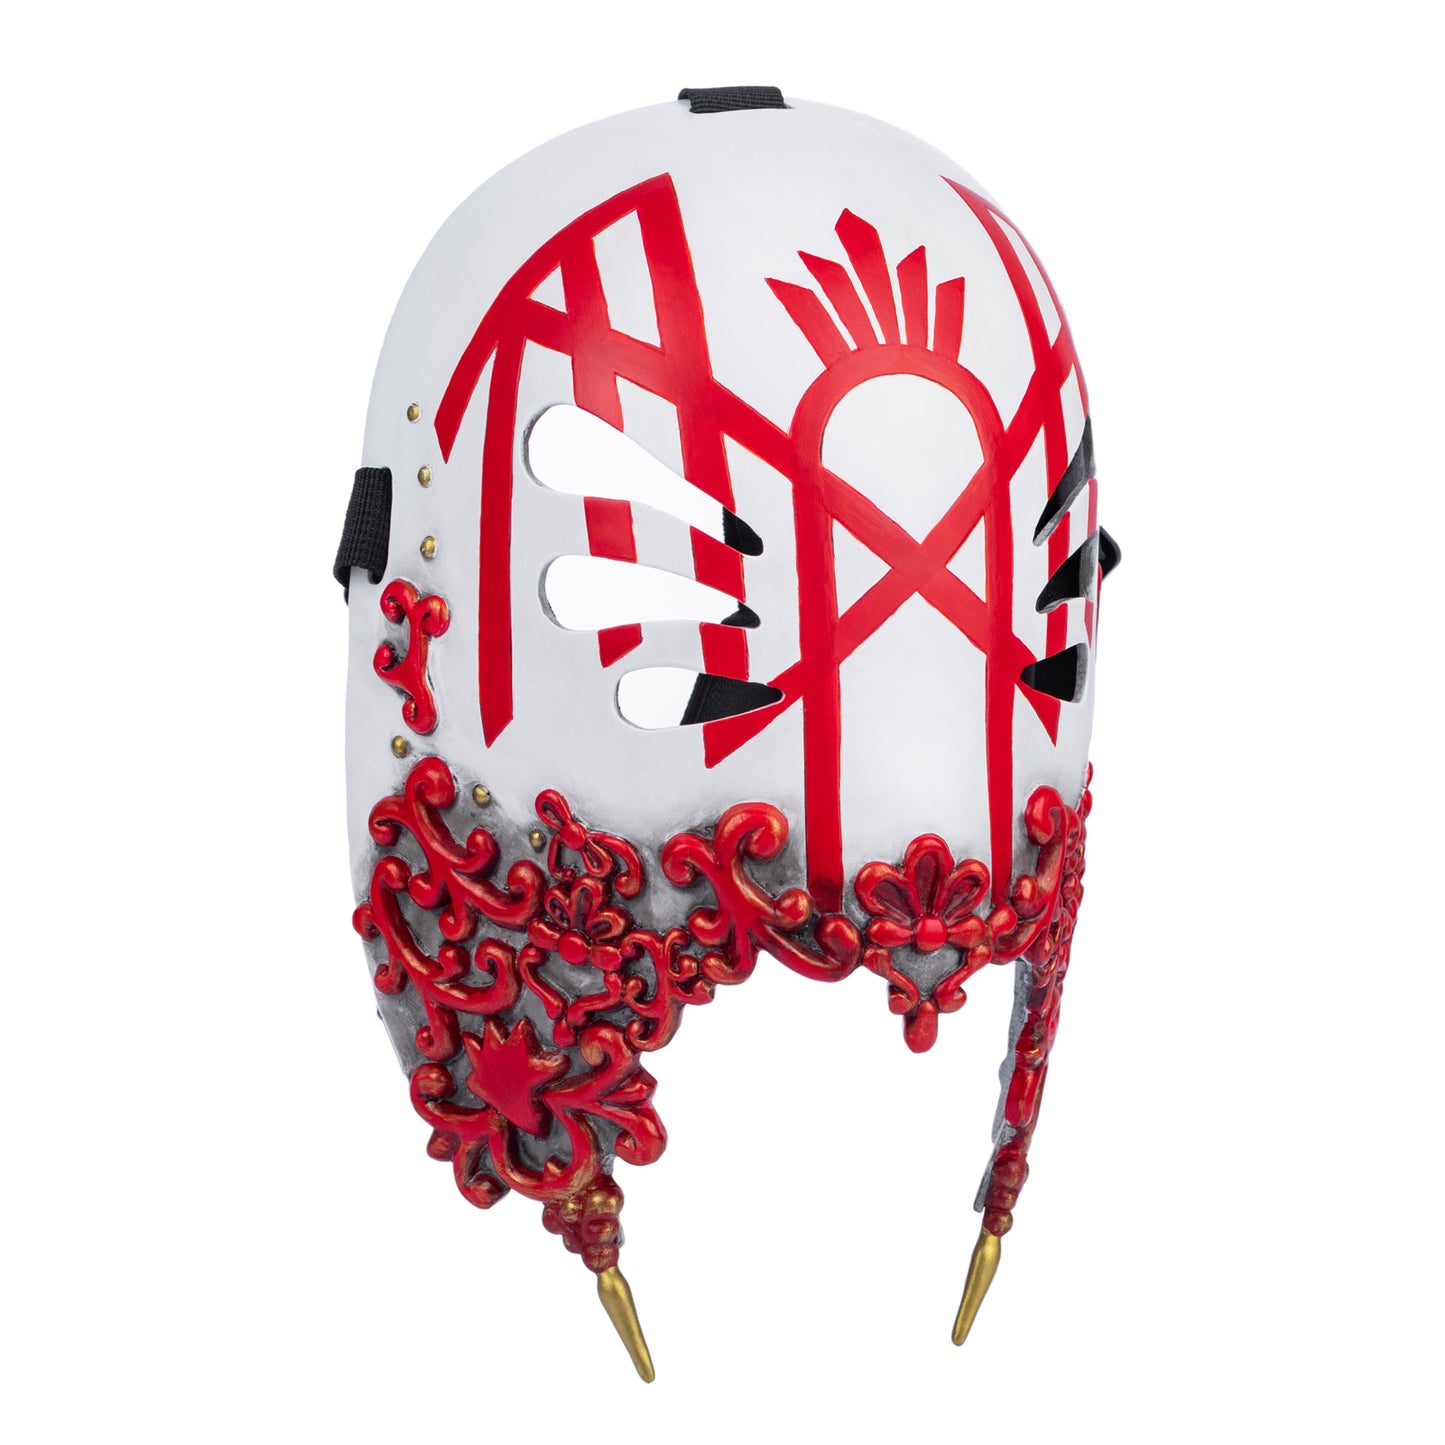 【Neu eingetroffen】Xcoser Sleep Vesselposting Neue Maske für Rockband Halloween Weihnachten Cosplay Requisiten Harz